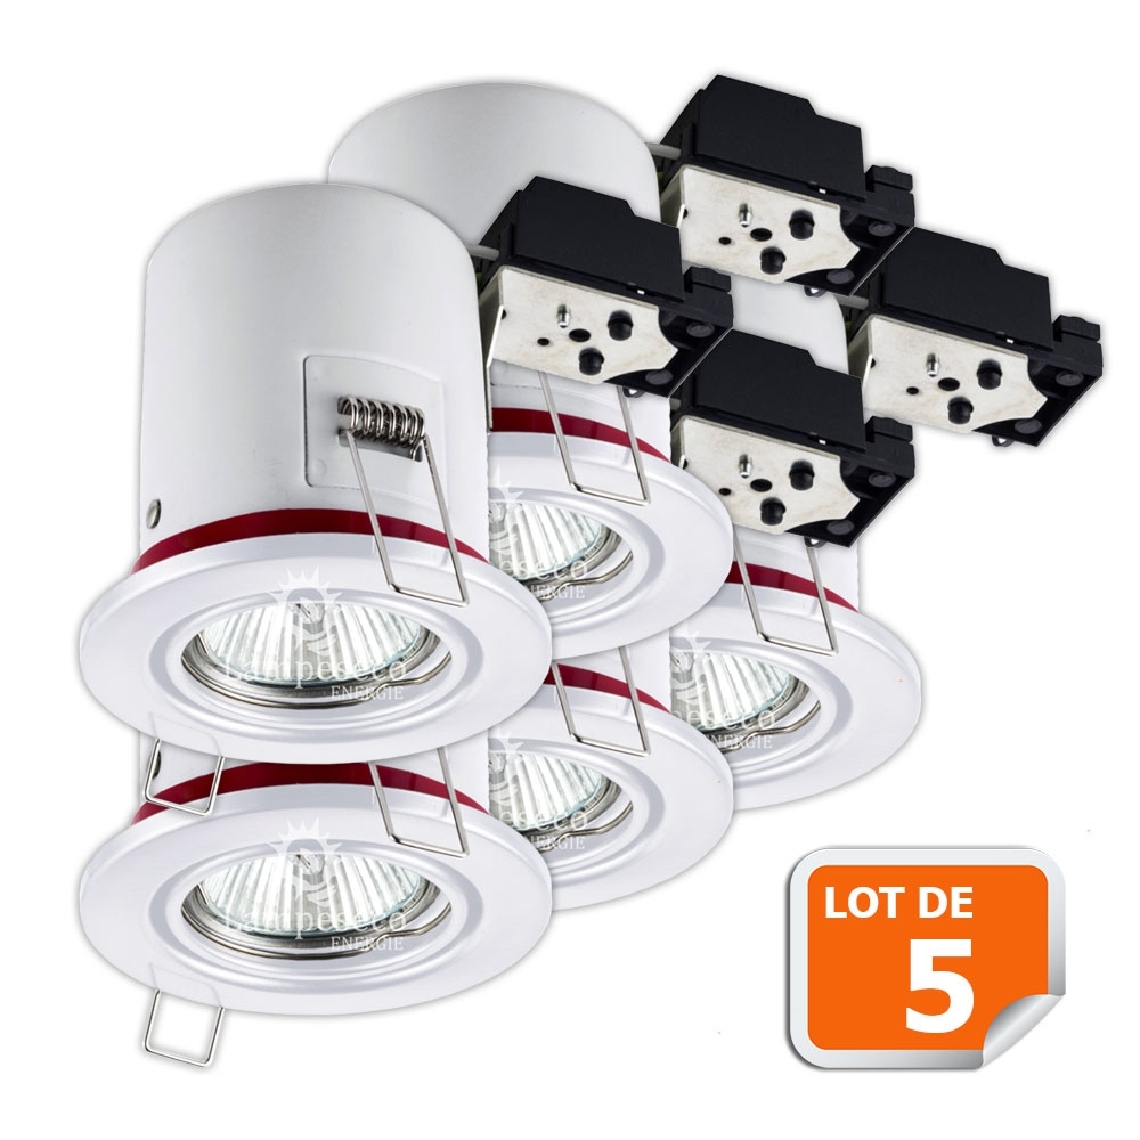 Lampesecoenergie - Lot de 5 Support de spot BBC Orientable Blanc diametre 90mm avec douille automatique GU10 ref. 826 - Moulures et goulottes